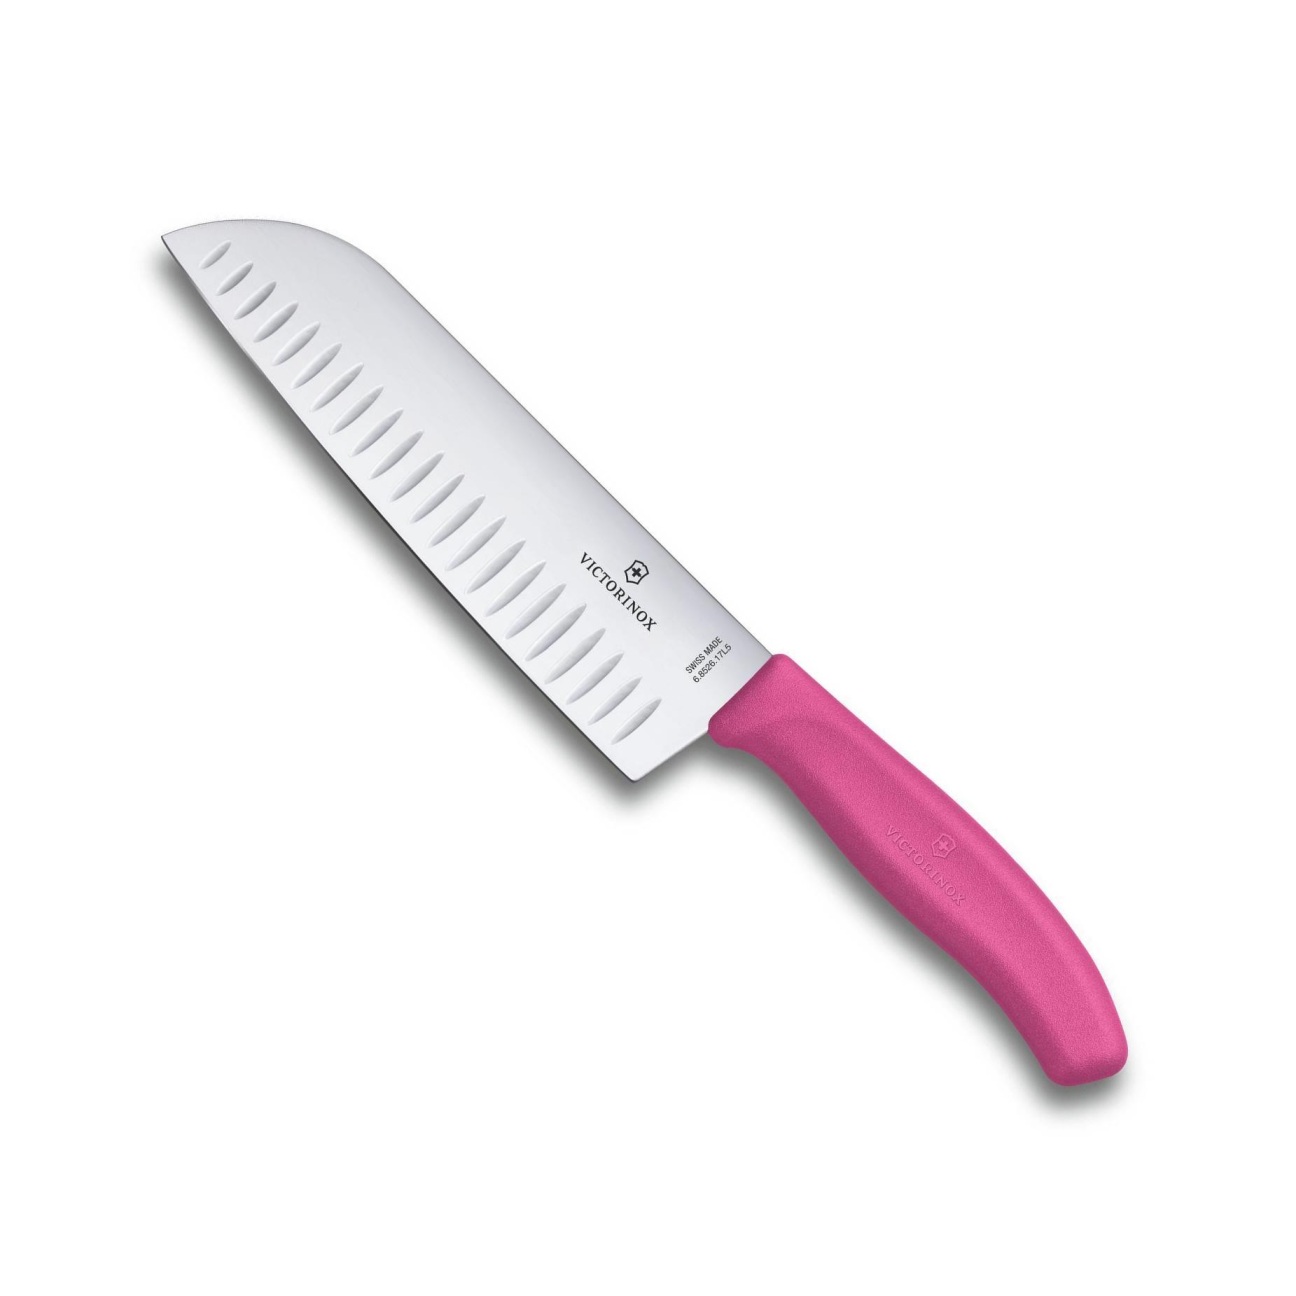 Japonský Nůž Santoku s výbrusy SWISS CLASSIC 17 cm růžový - Victorinox